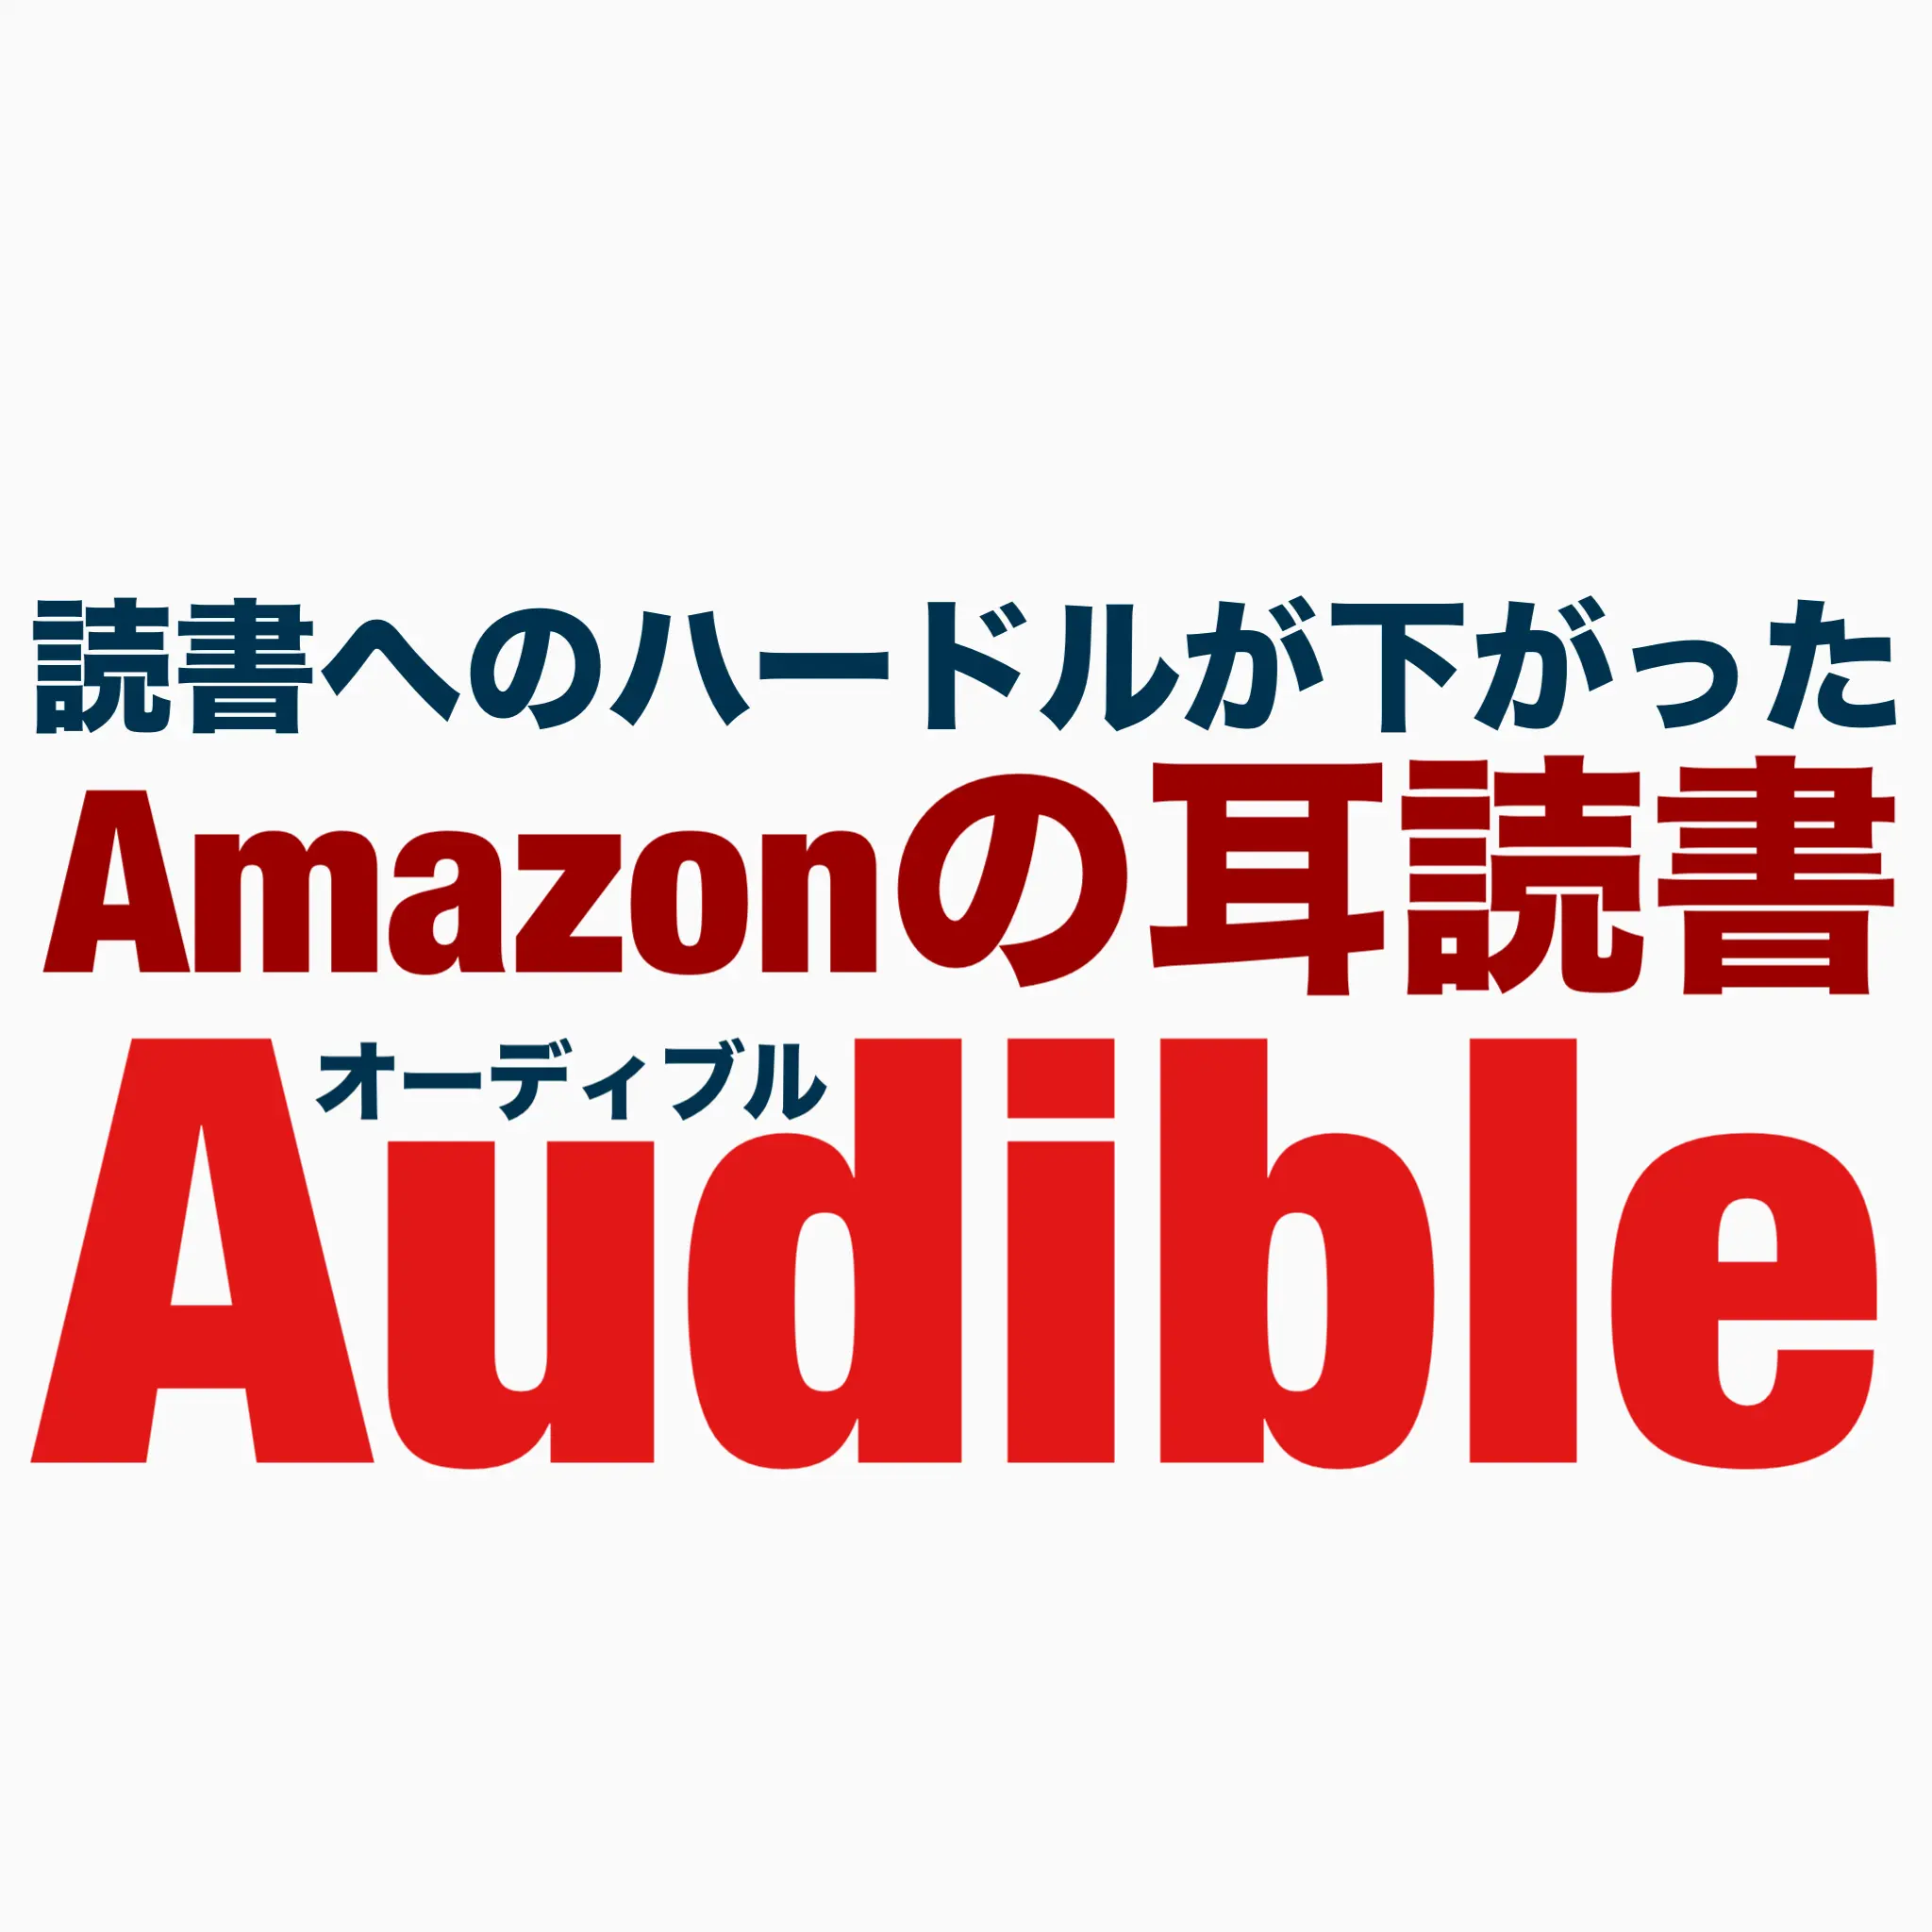 Amazonの耳読書Audible